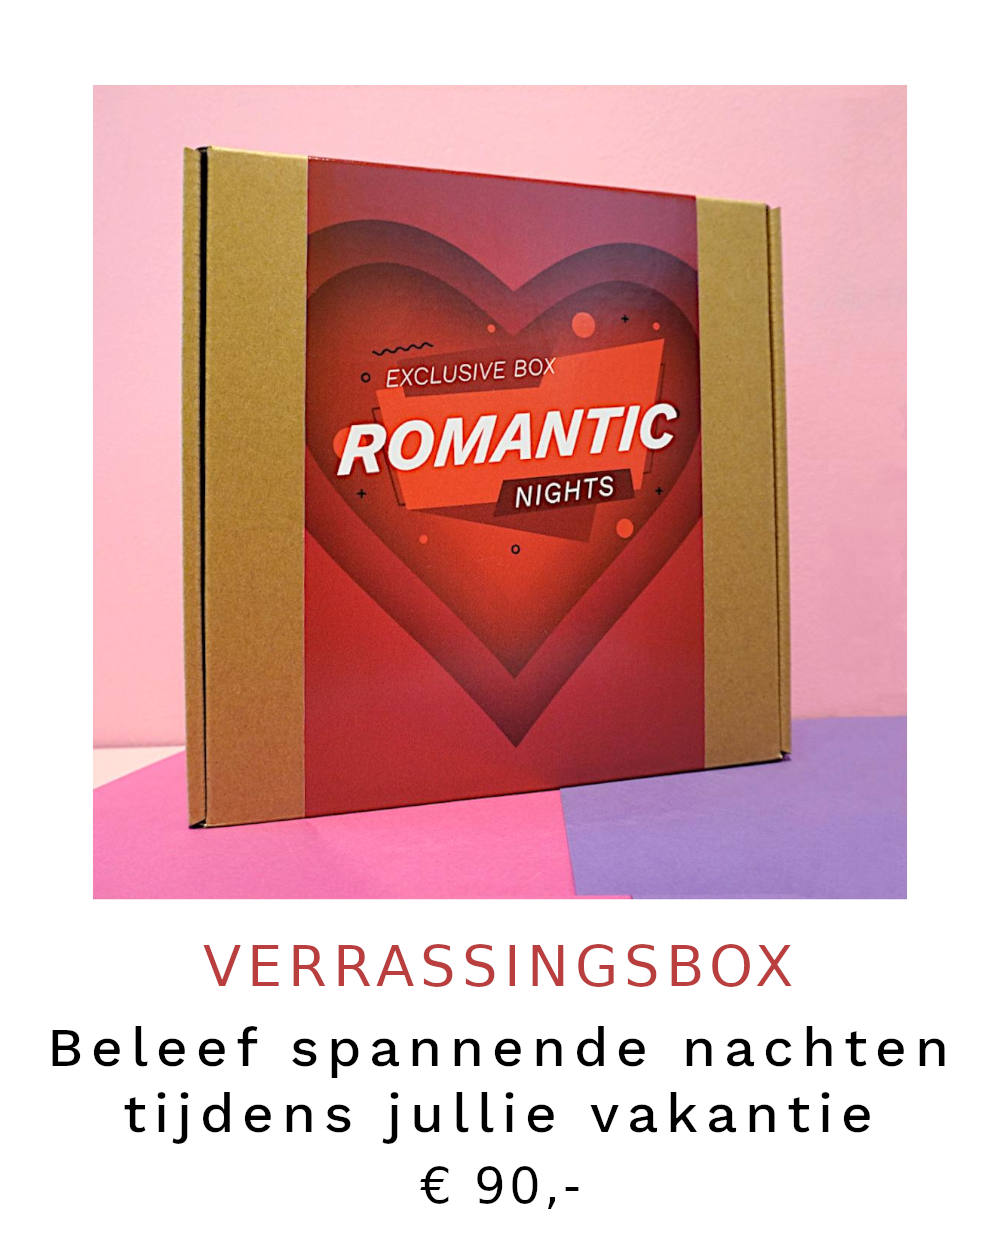 Verrassingsbox Romantic Nights